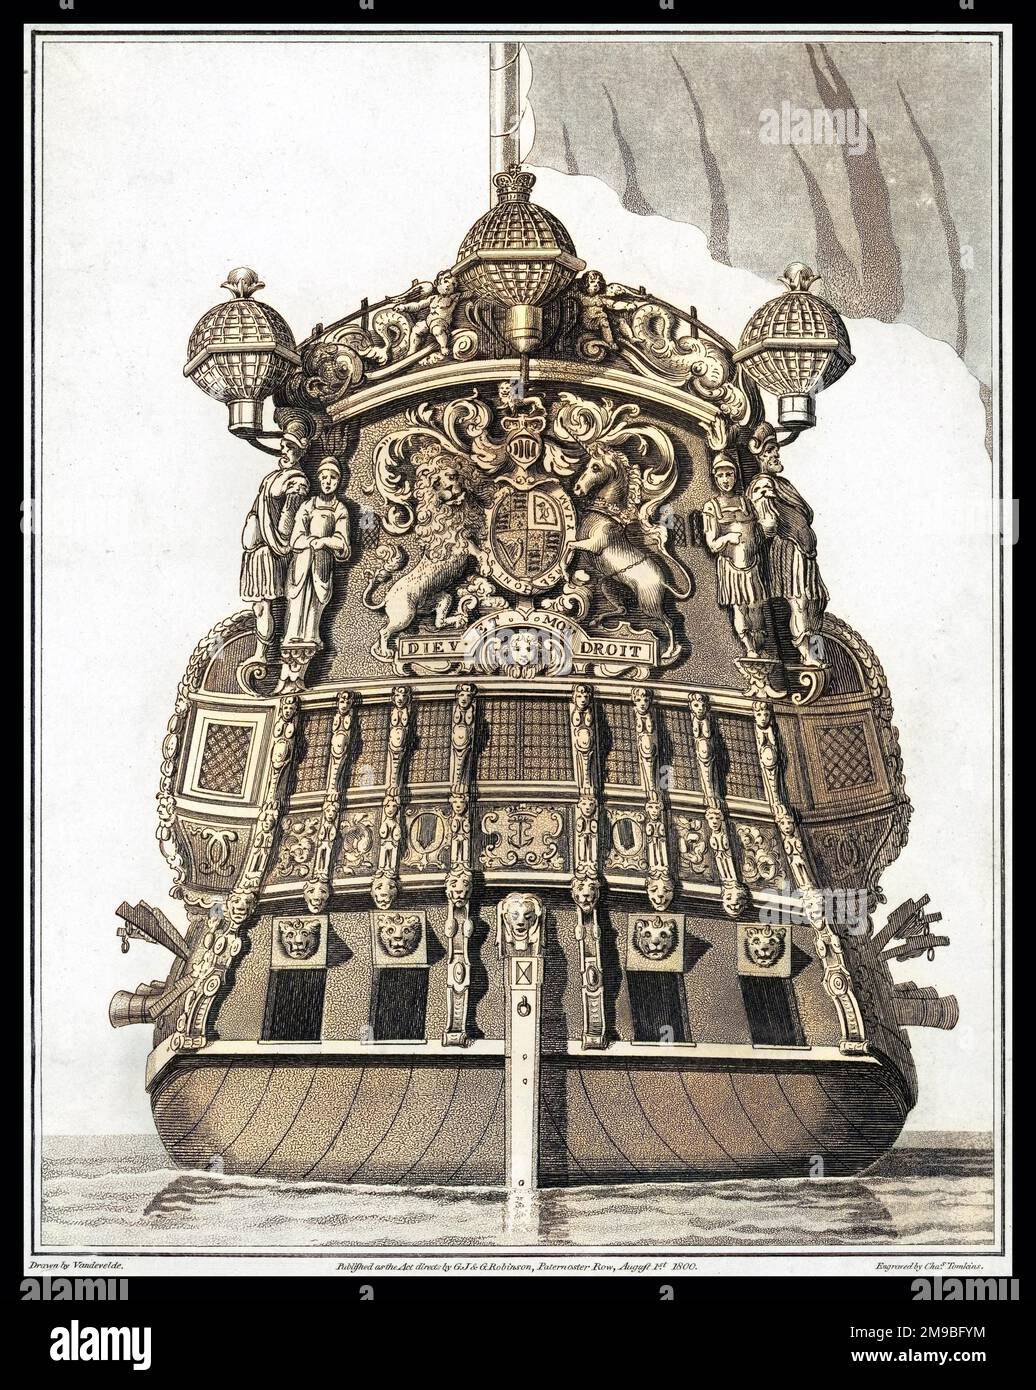 Das Heck eines britischen Kriegsschiffs, das das britische Wappen zeigt Stockfoto